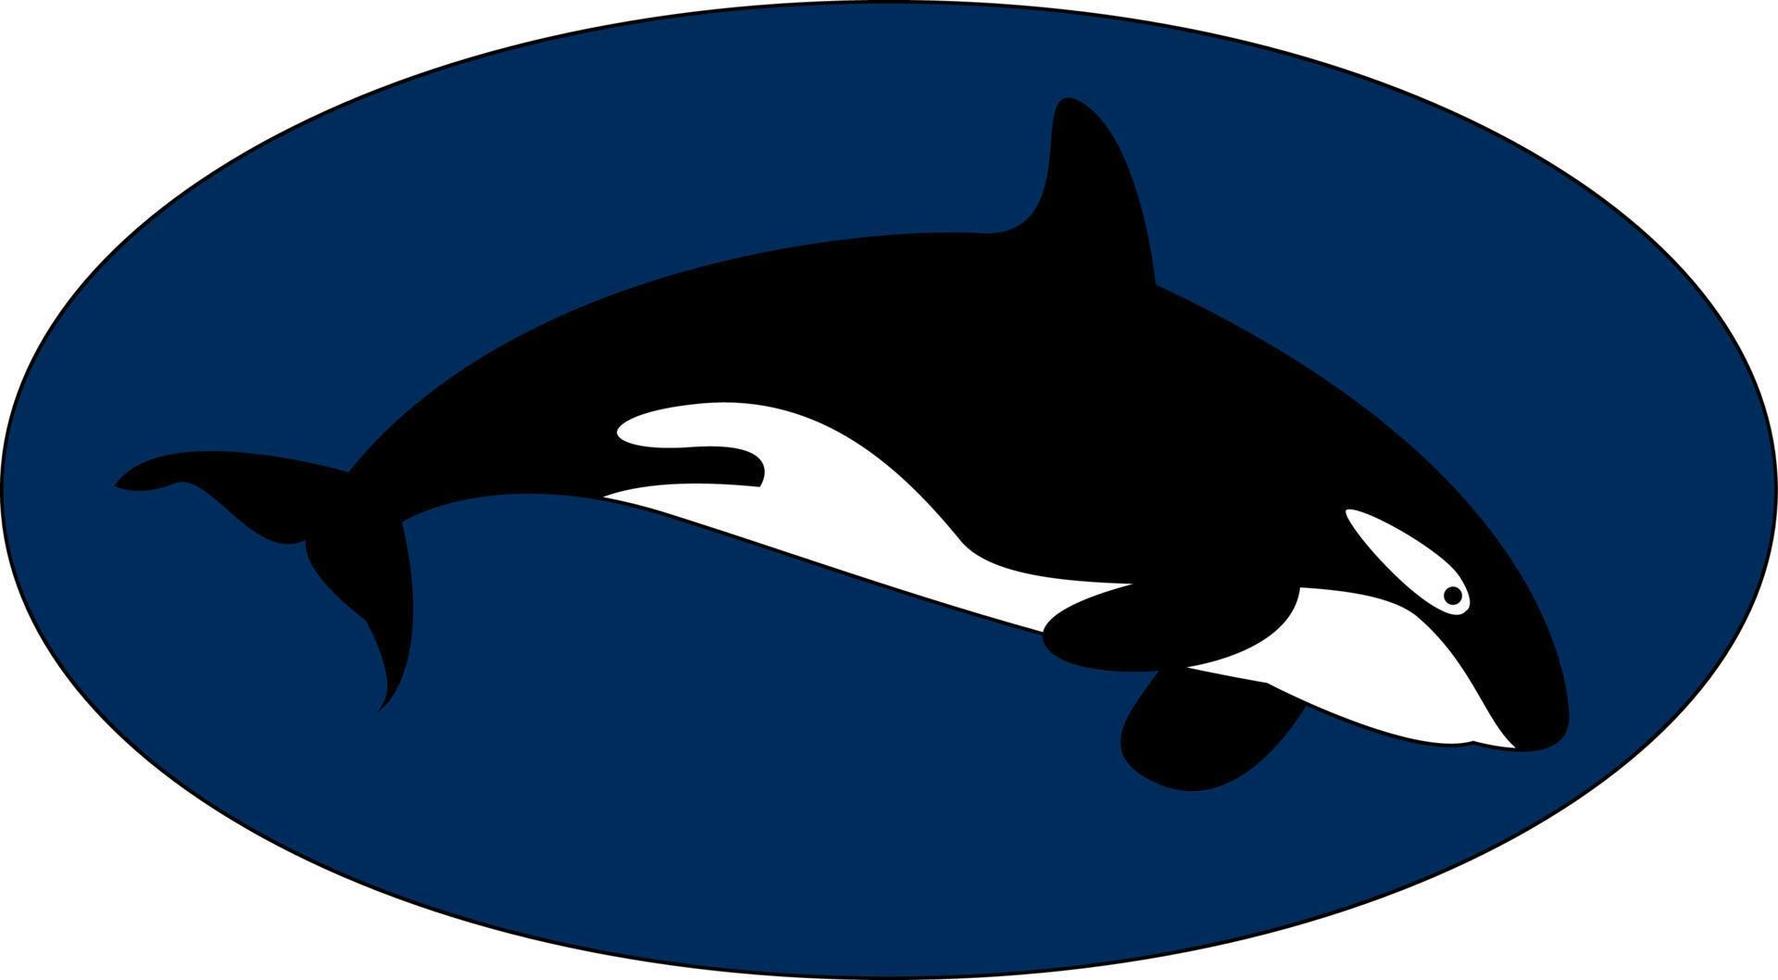 Killer whale underwater, illustration, vector on white background.